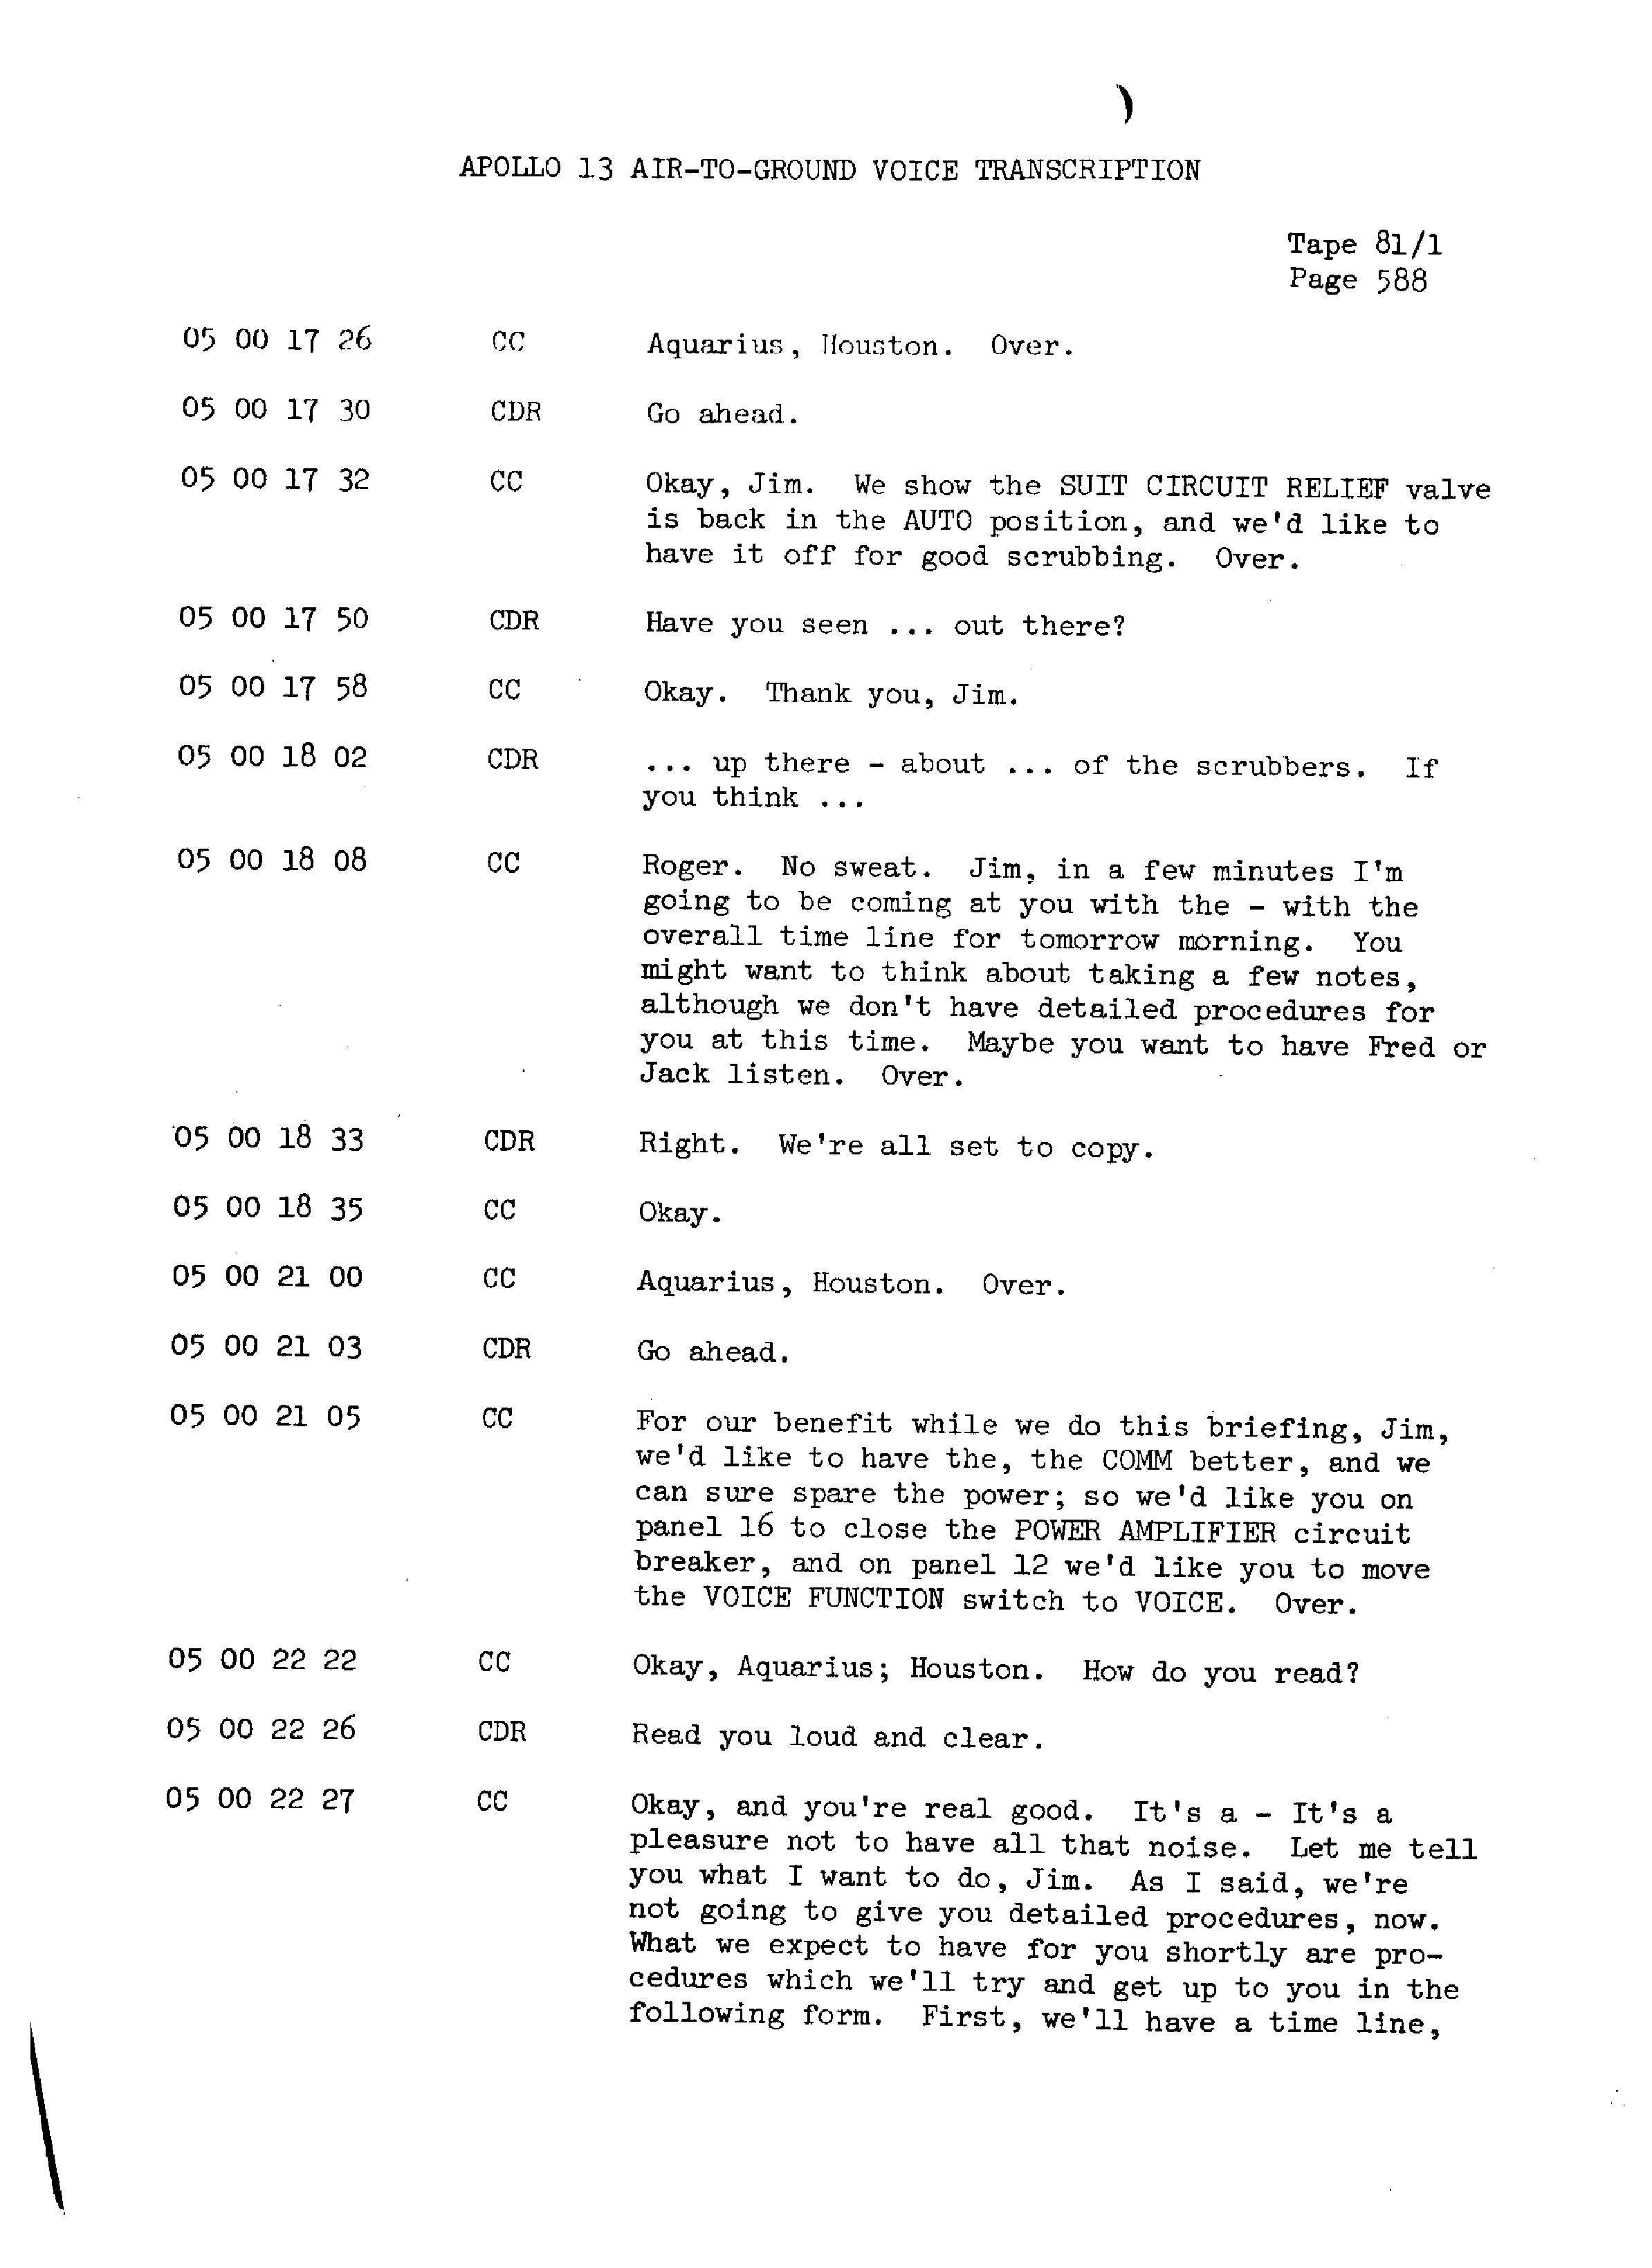 Page 595 of Apollo 13’s original transcript